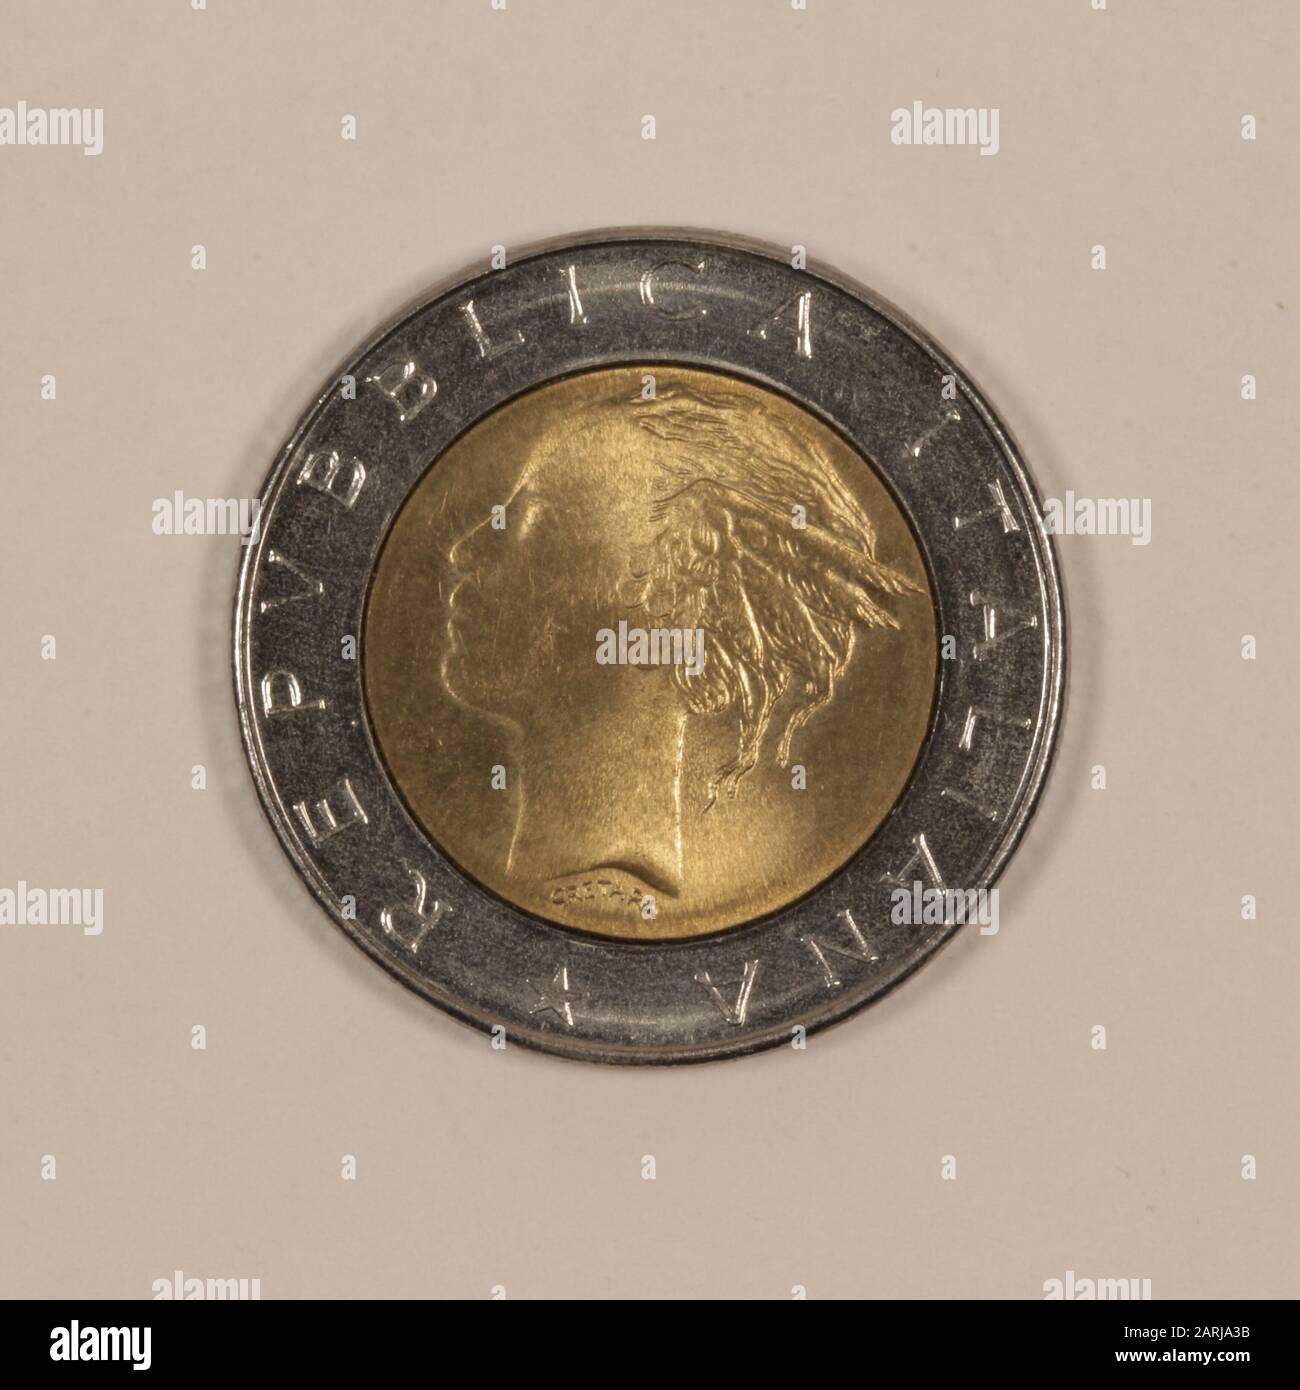 Rückseite einer ehemaliguen Italienischen 500 Lire Münze Foto Stock